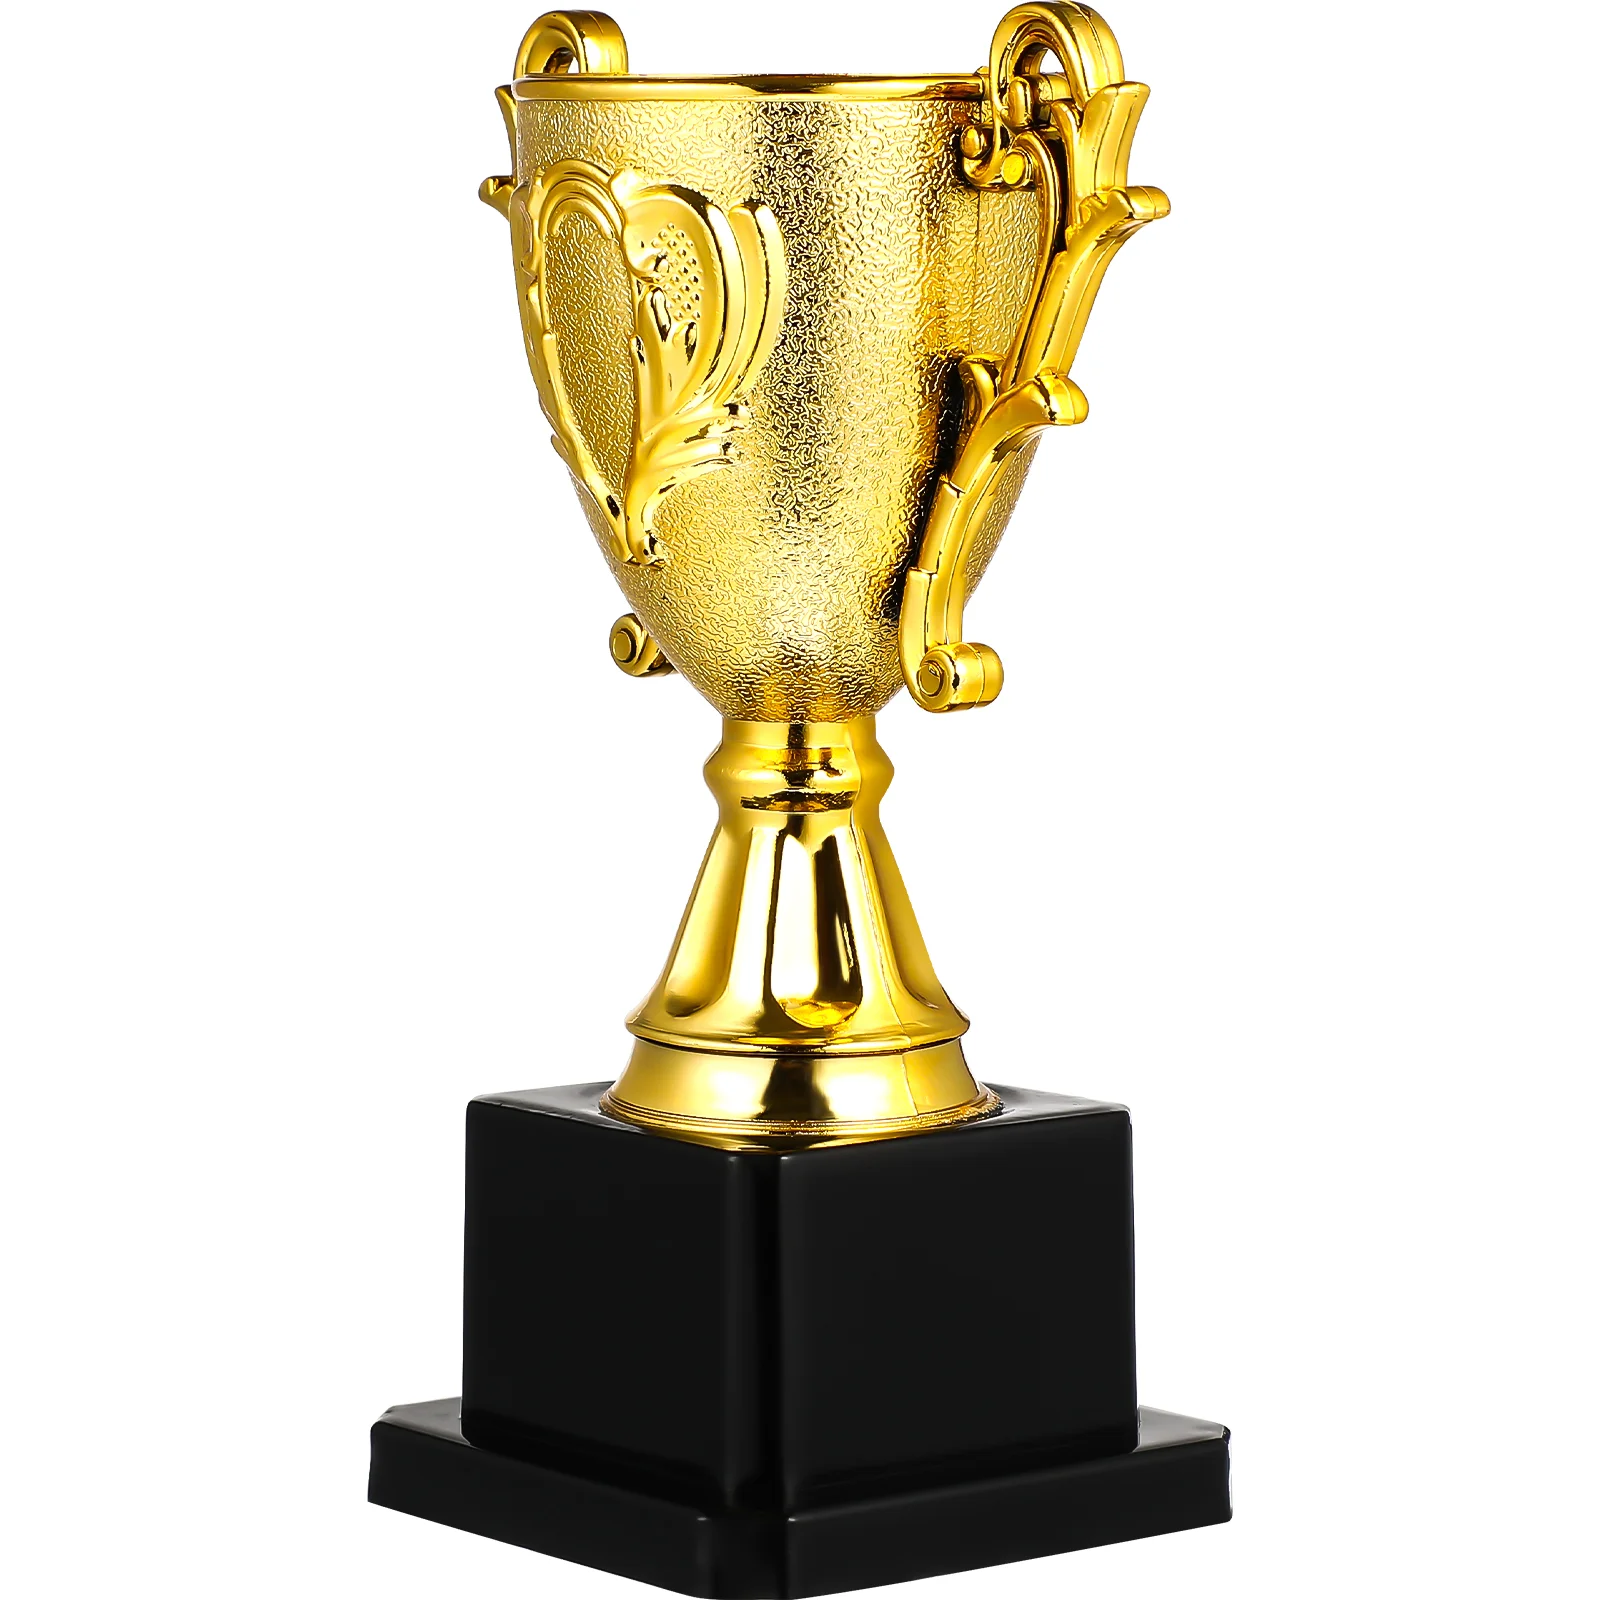 

Трофей-Победитель награды для детей, игрушки, трофеи, турниры, личное вознаграждение, золотой медаль, подарок